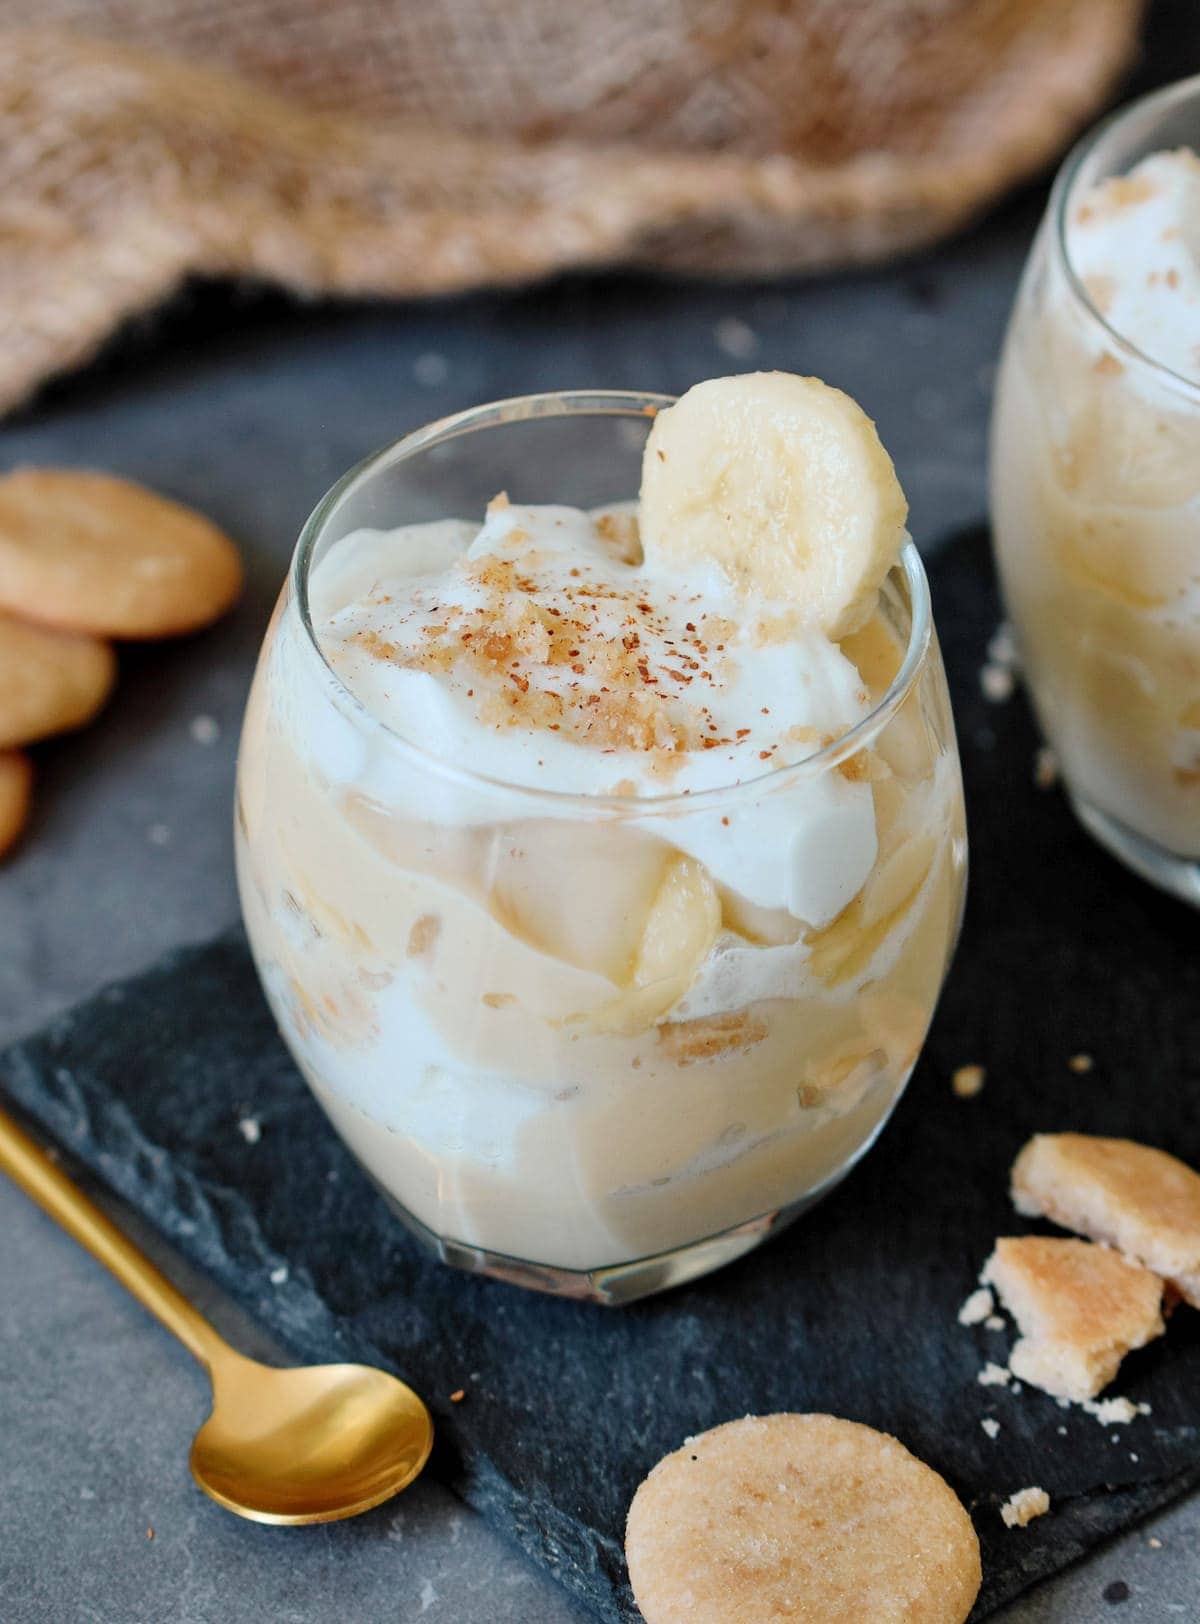 Veganer Pudding im Glas geschichtet mit Bananen, Schlagsahne und Vanille Plätzchen